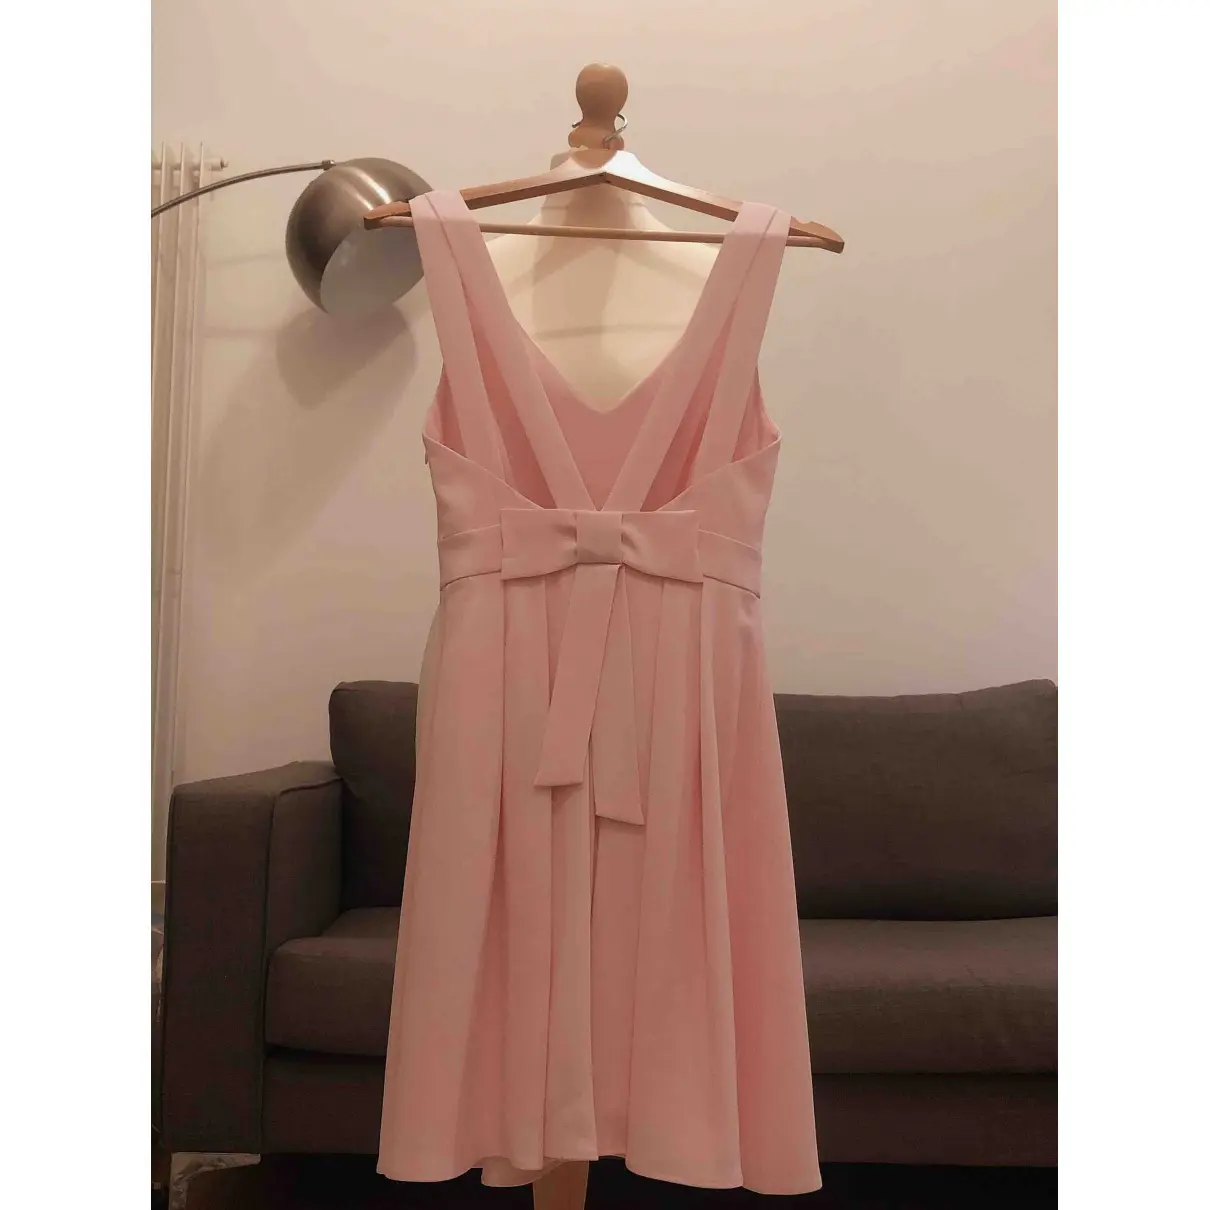 Buy Claudie Pierlot Spring Summer 2019 mid-length dress online